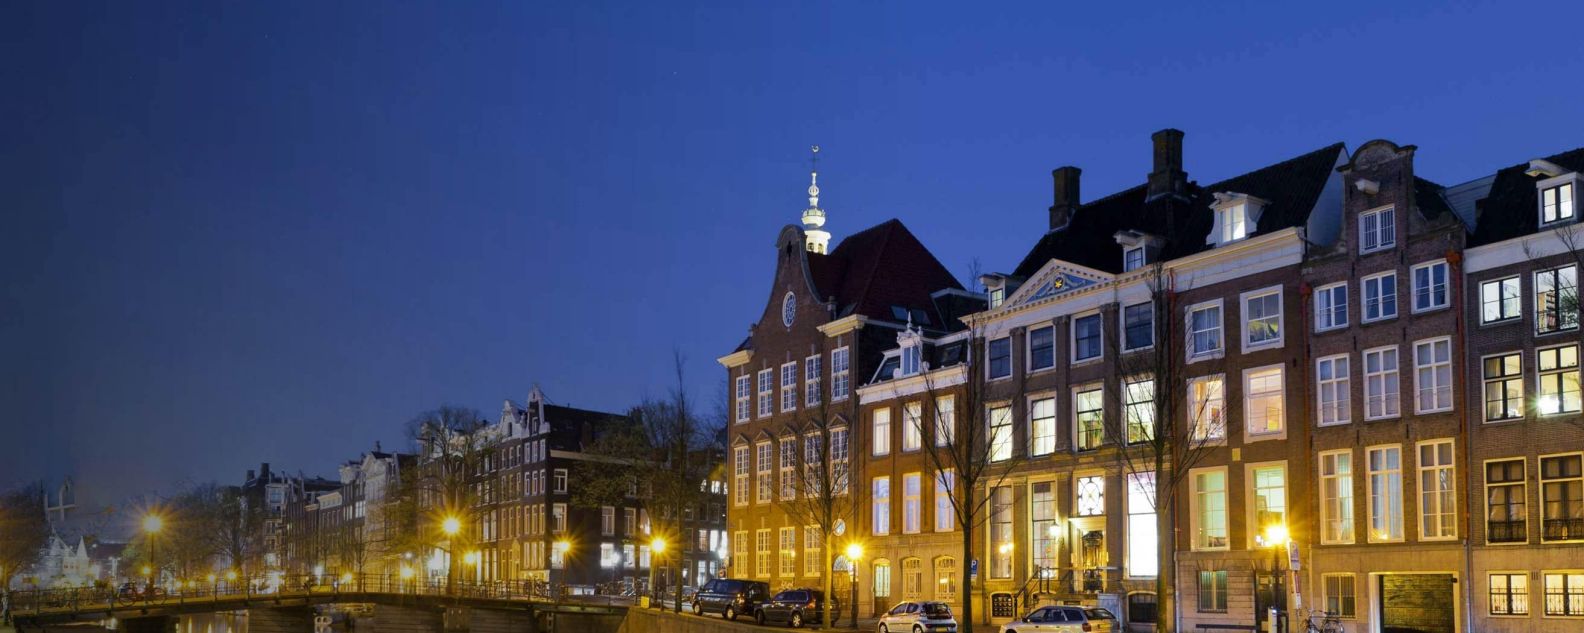 foto bangunan tradisional di Amsterdam, Belanda